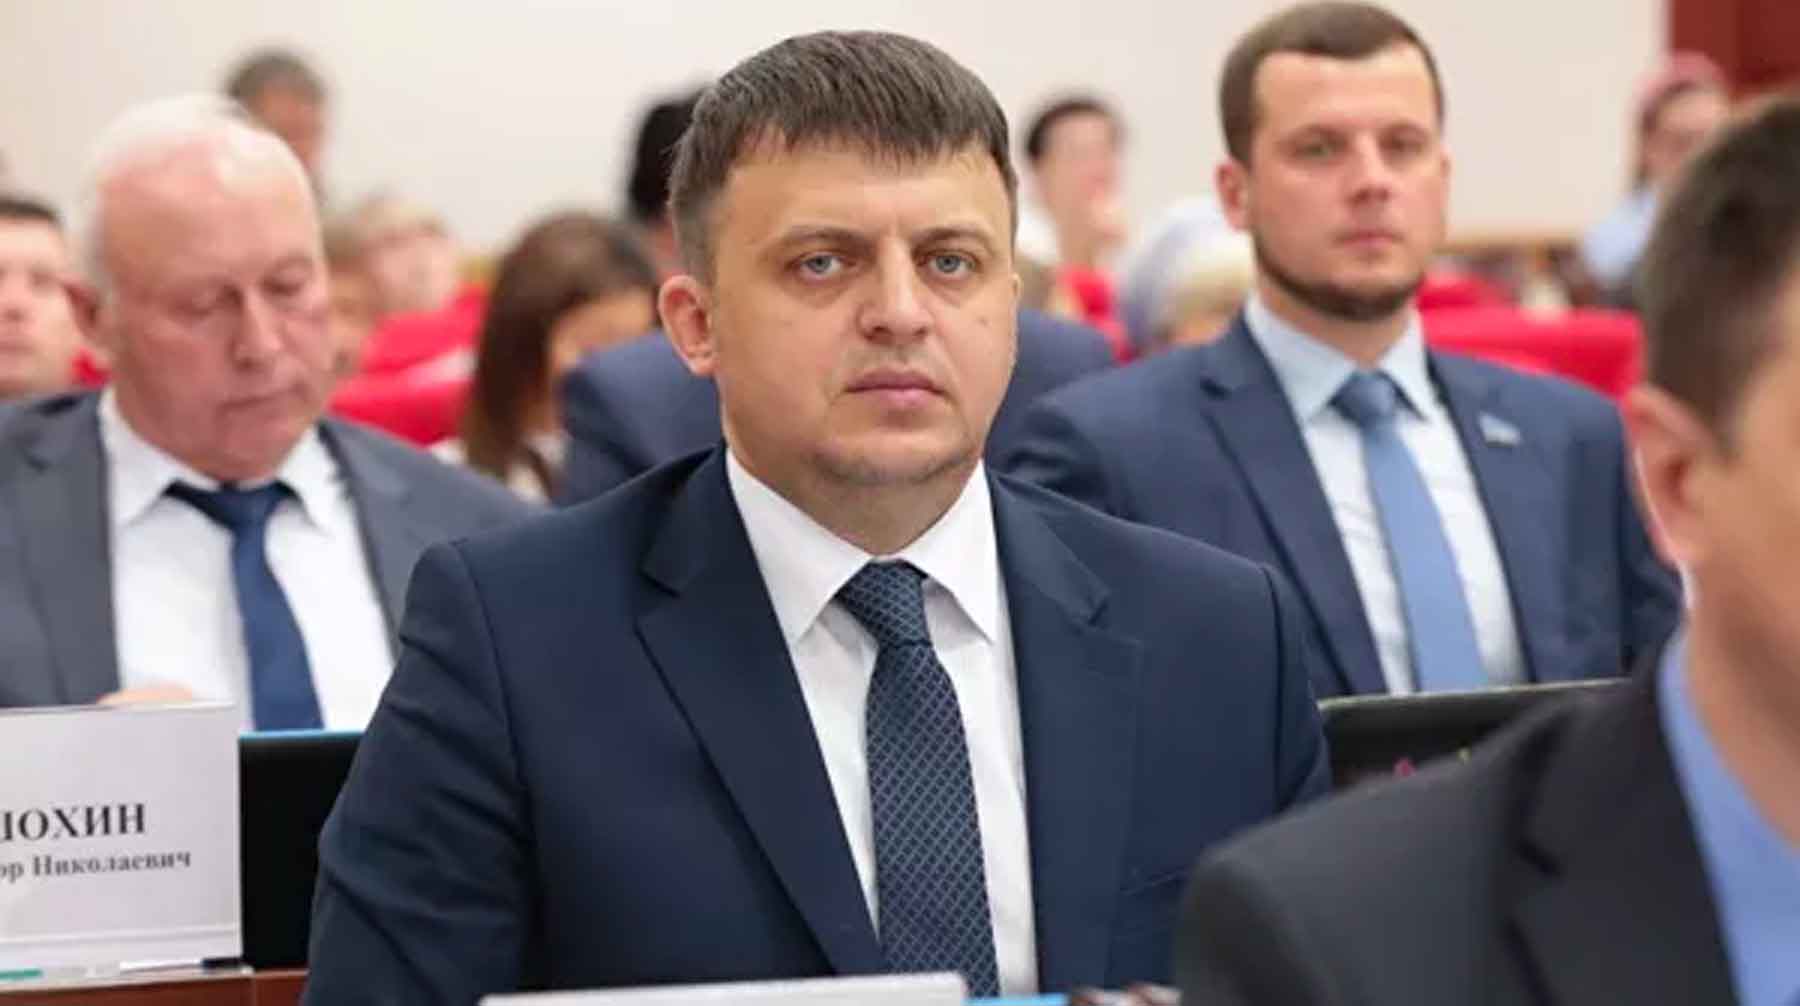 Ранее в краевой думе сообщили, что парламентарий сложил полномочия Дмитрий Приятнов